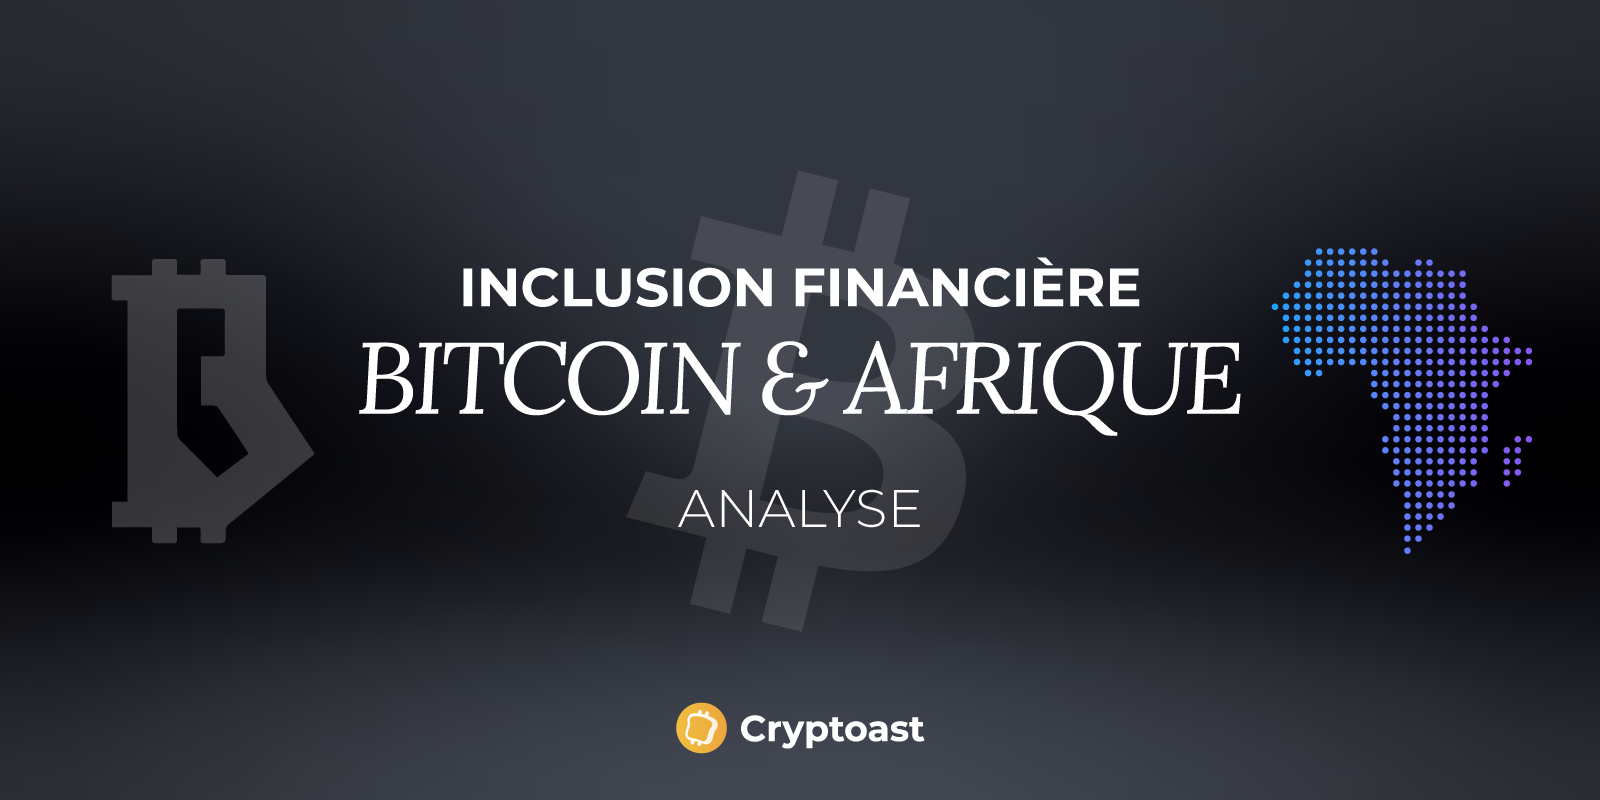 Favoriser l’inclusion financière en Afrique grâce à Bitcoin, l’objectif de Machankura